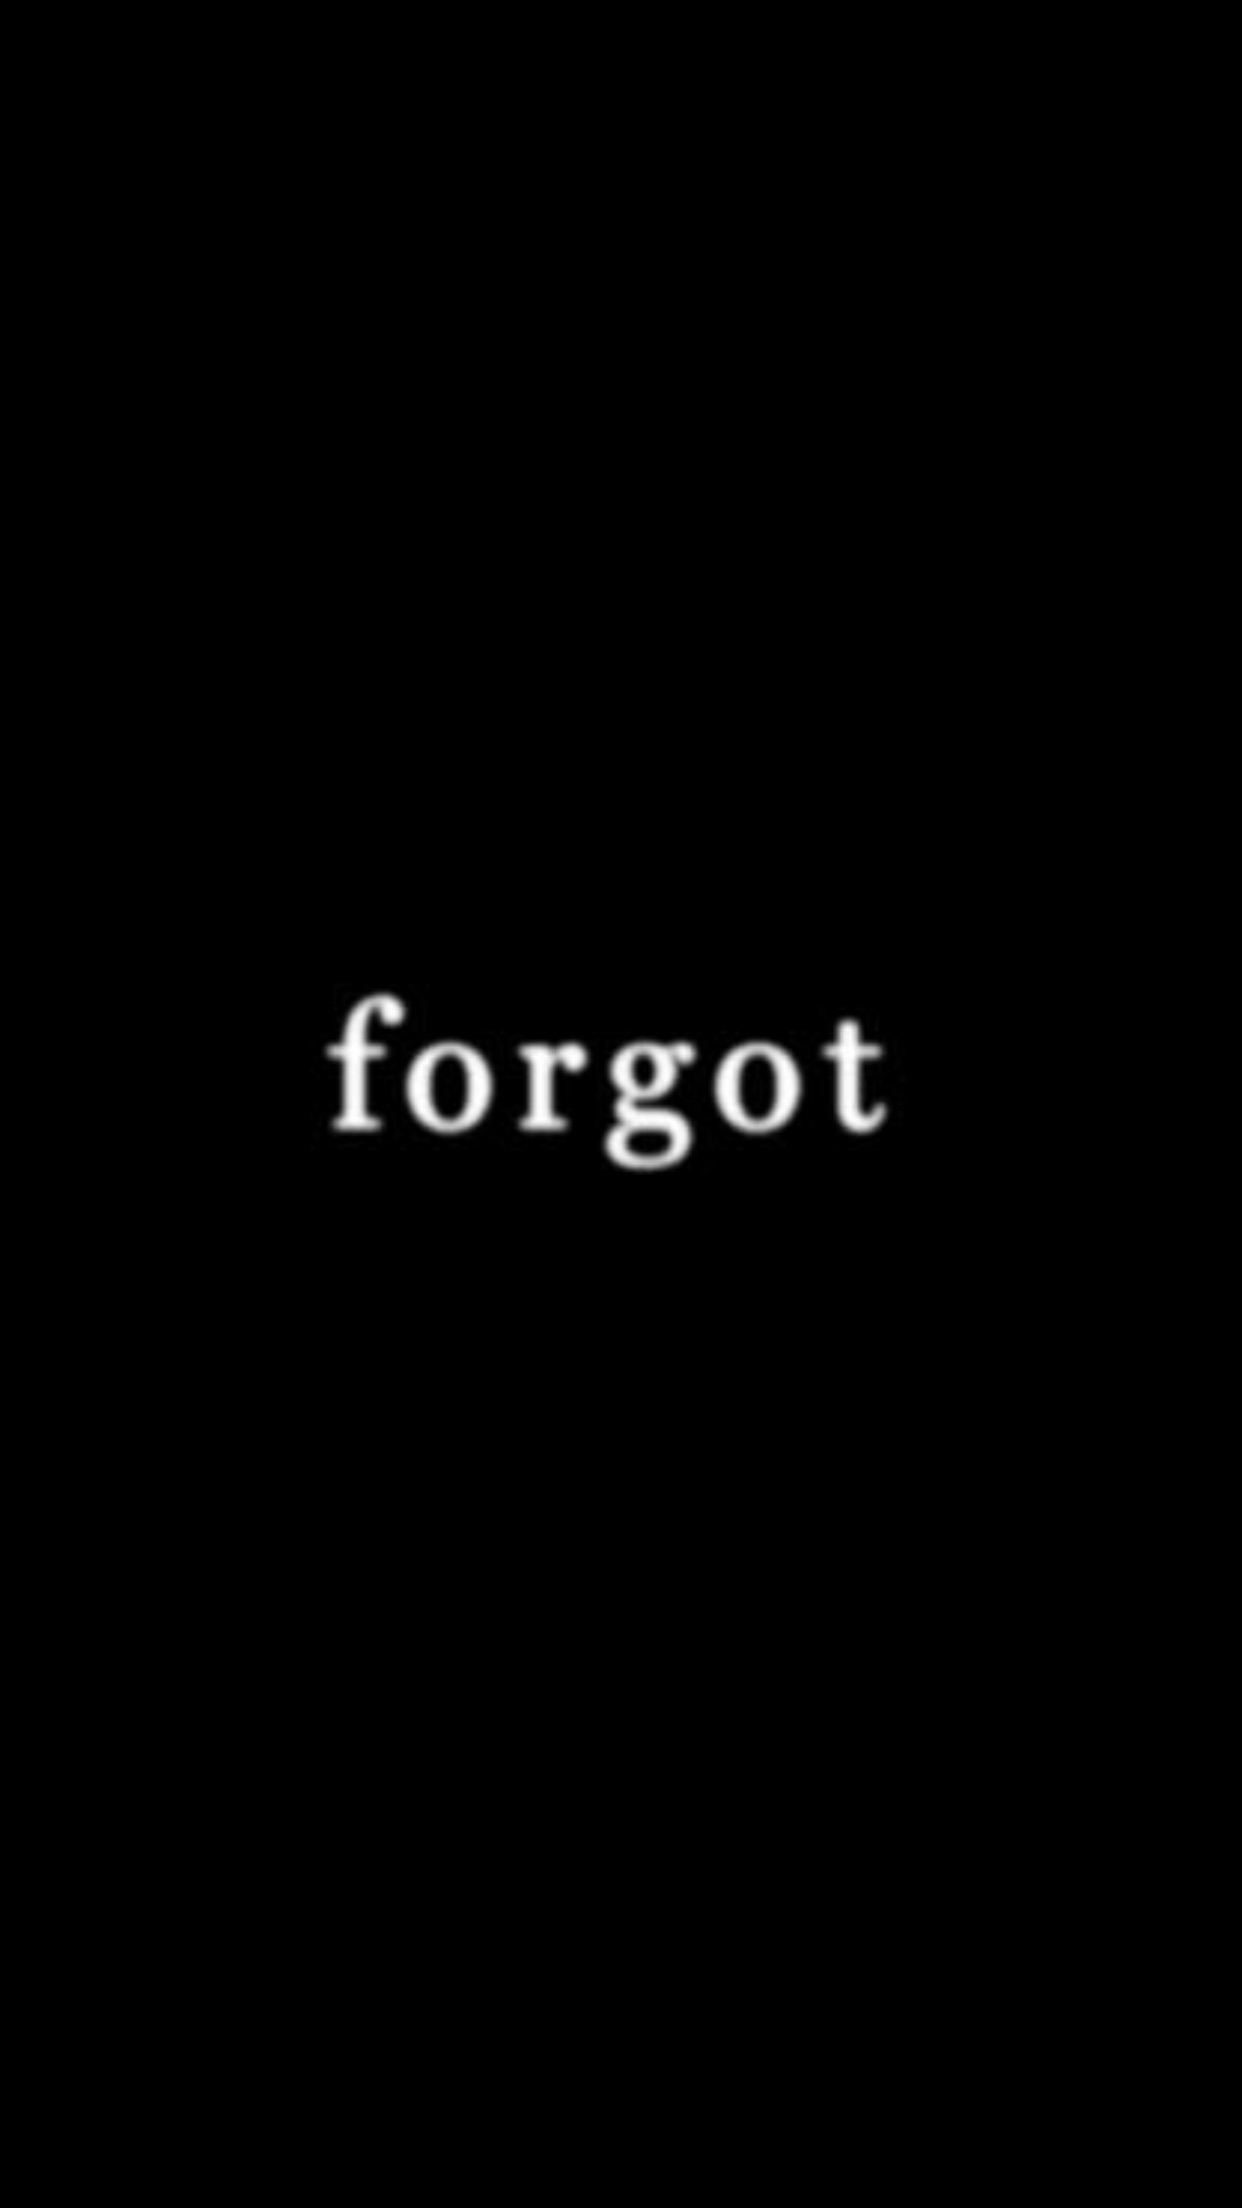 Forgot